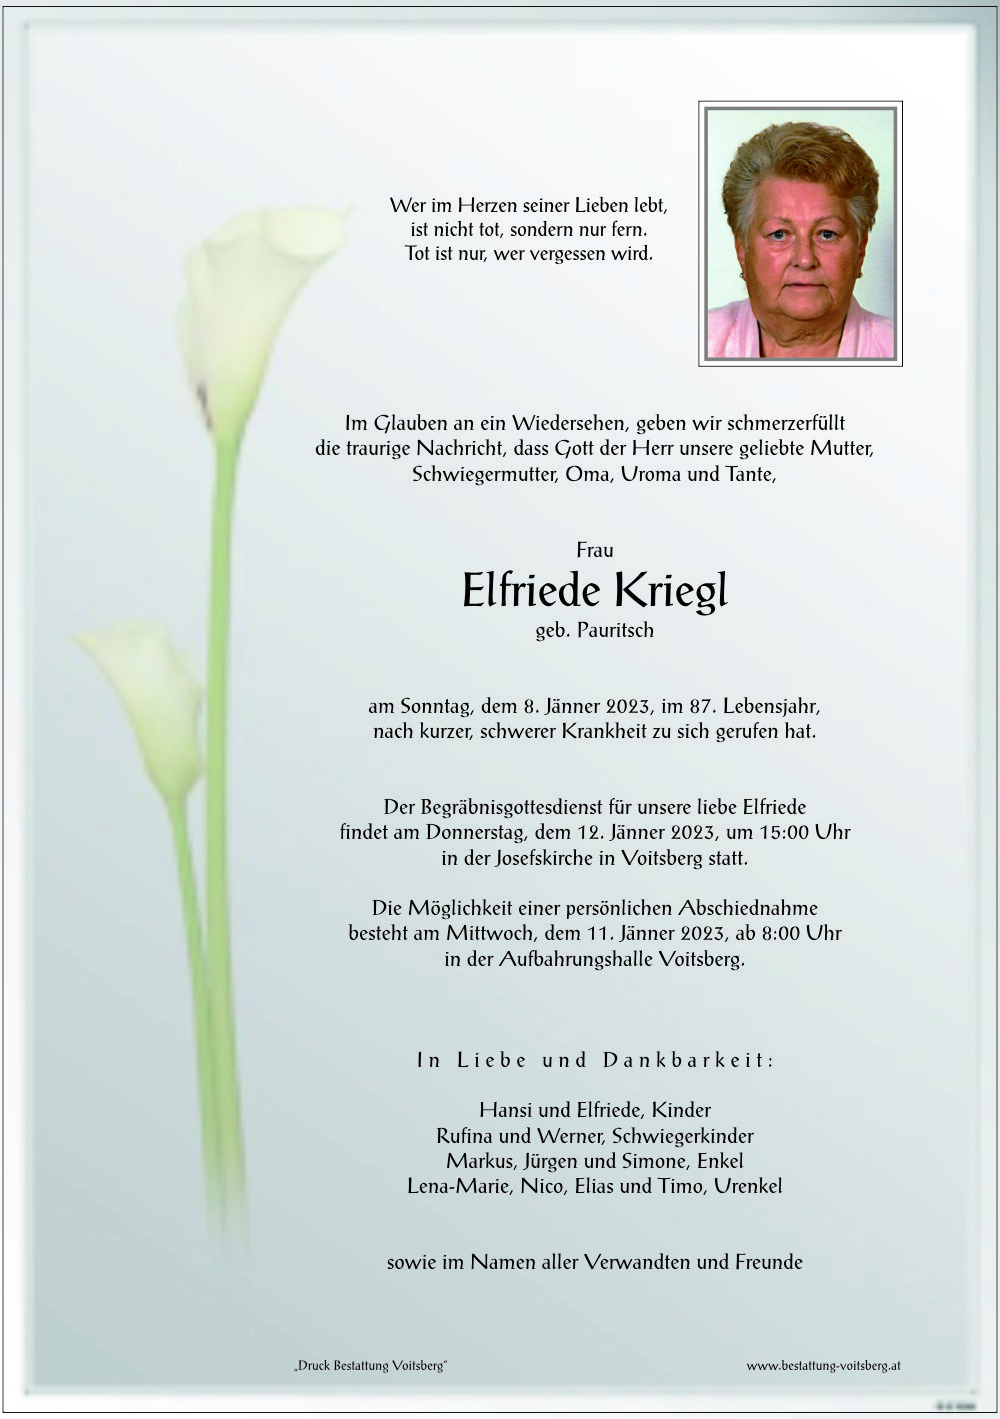 Elfriede Kriegl